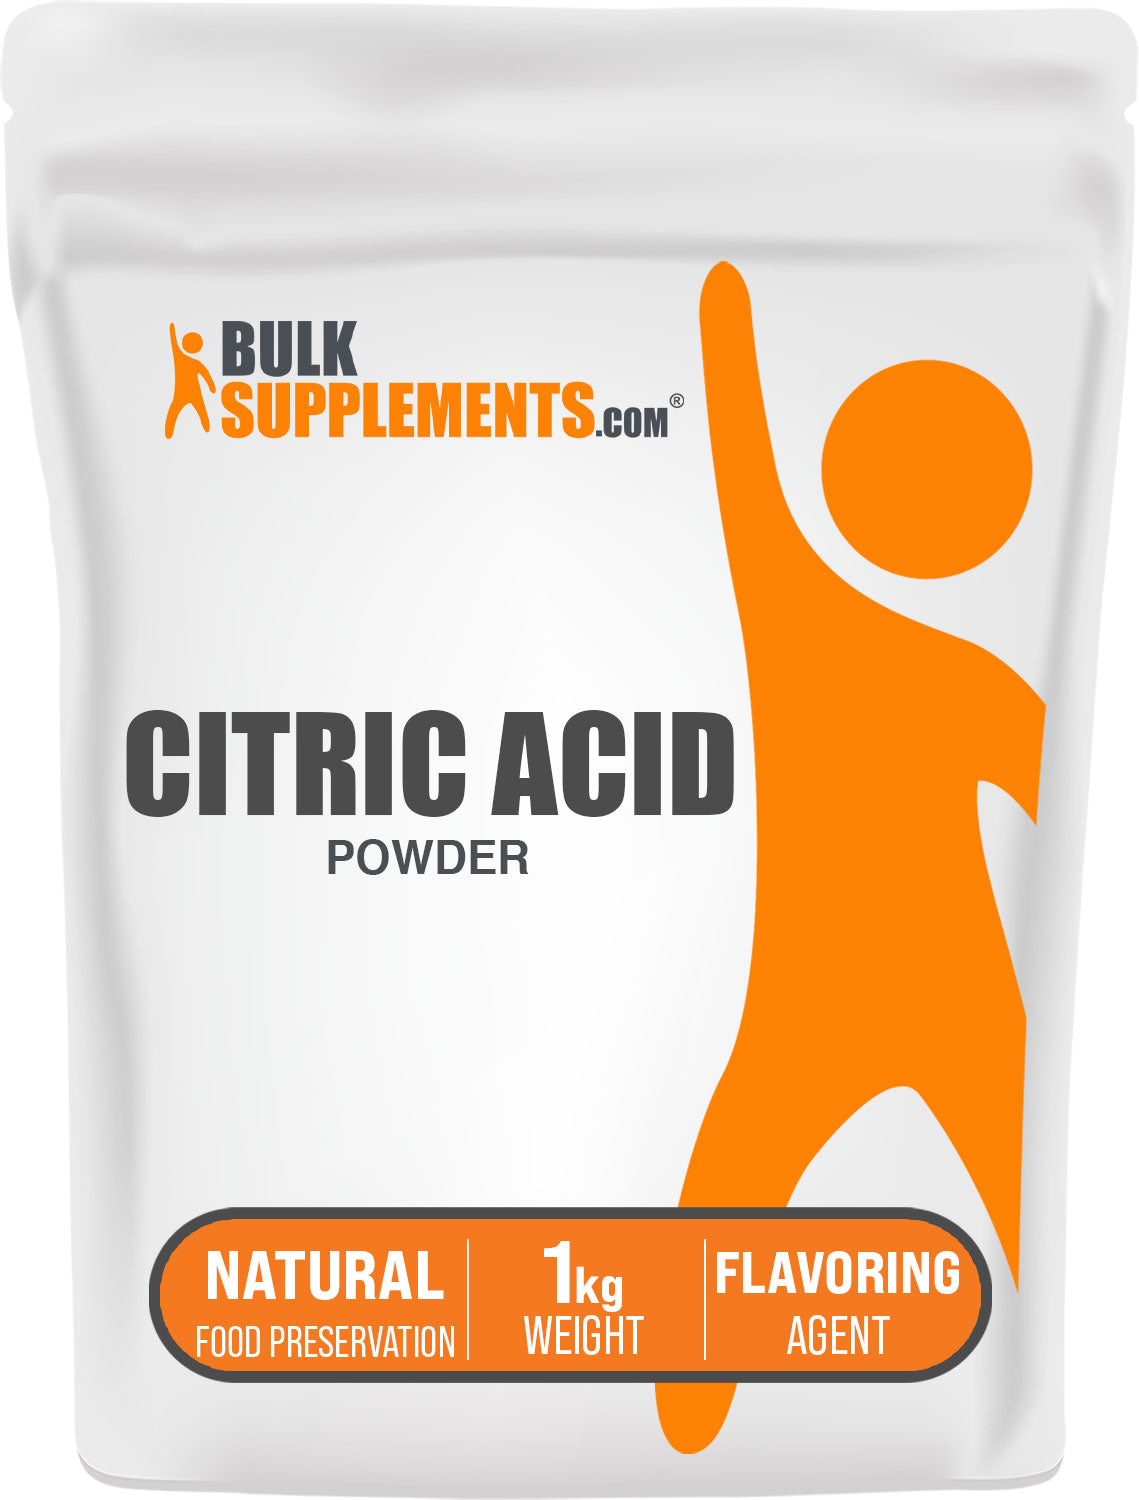 1kg citric acid